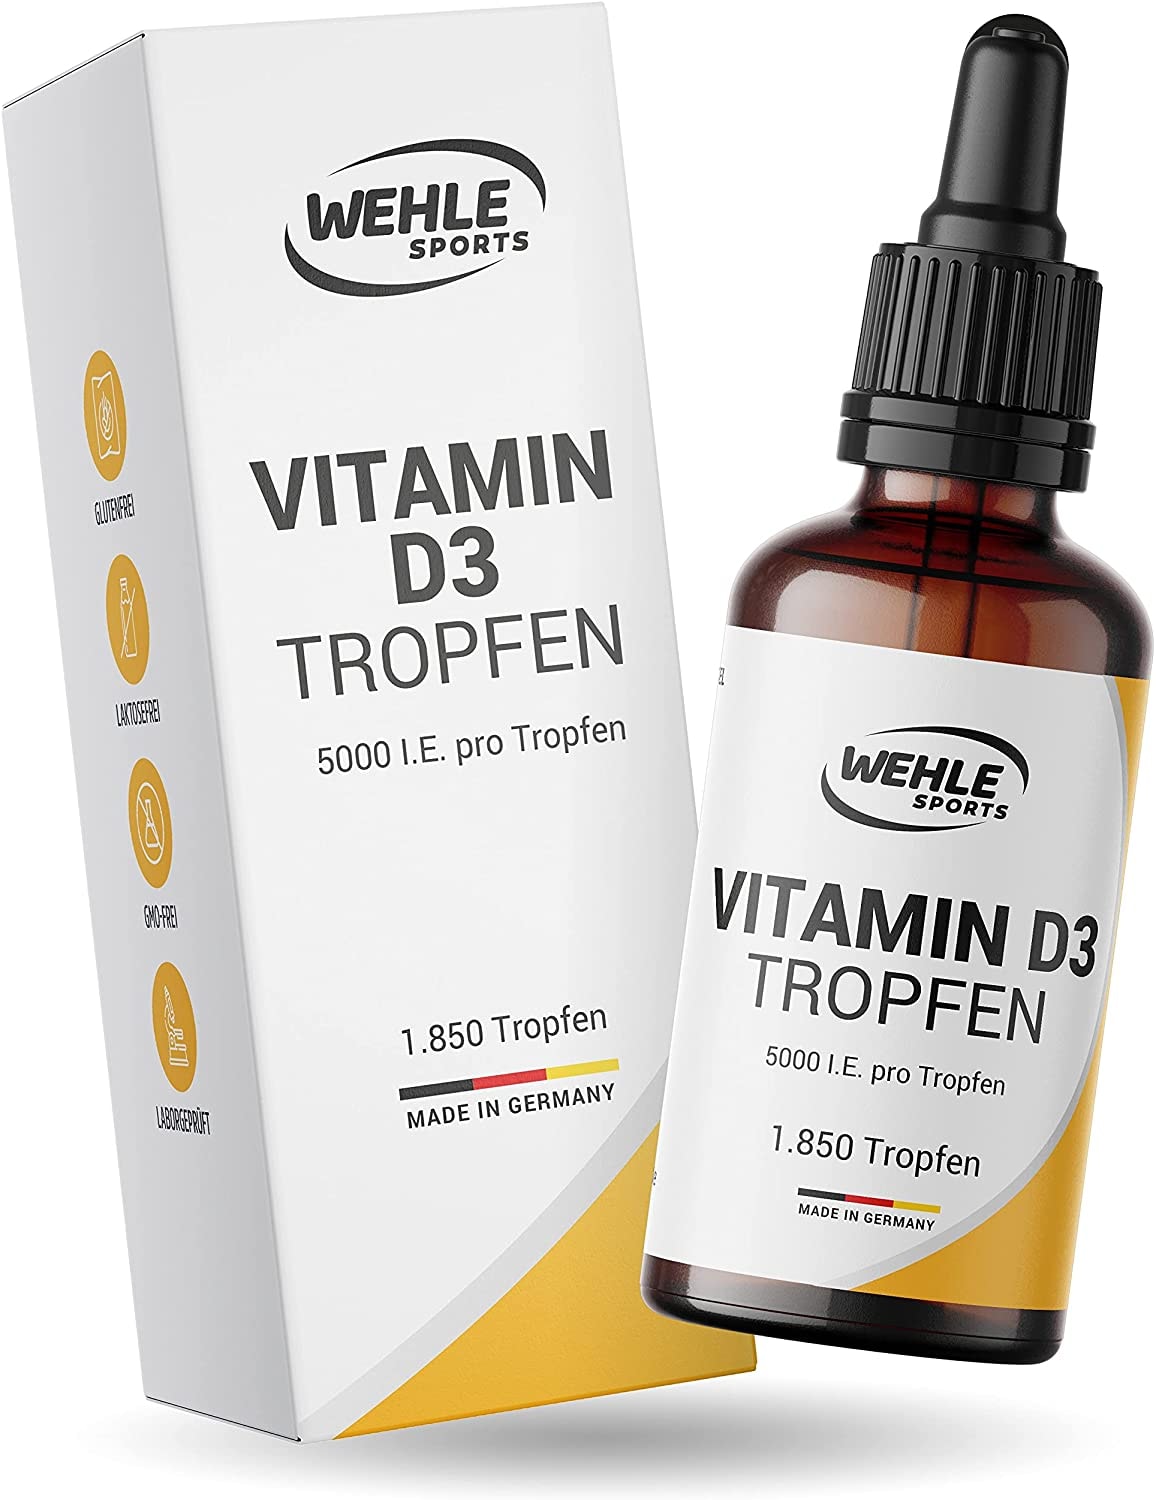 Wehle Sports Vitamin D3 Laborgeprüfte 5000 IE pro Tropfen hochdosiert Vergleichs-Sieger 2019-2021 - Hoch bioverfügbares Vitamin D flüssig 50ml (1850 Tropfen) mit MCT-Öl aus Kokos